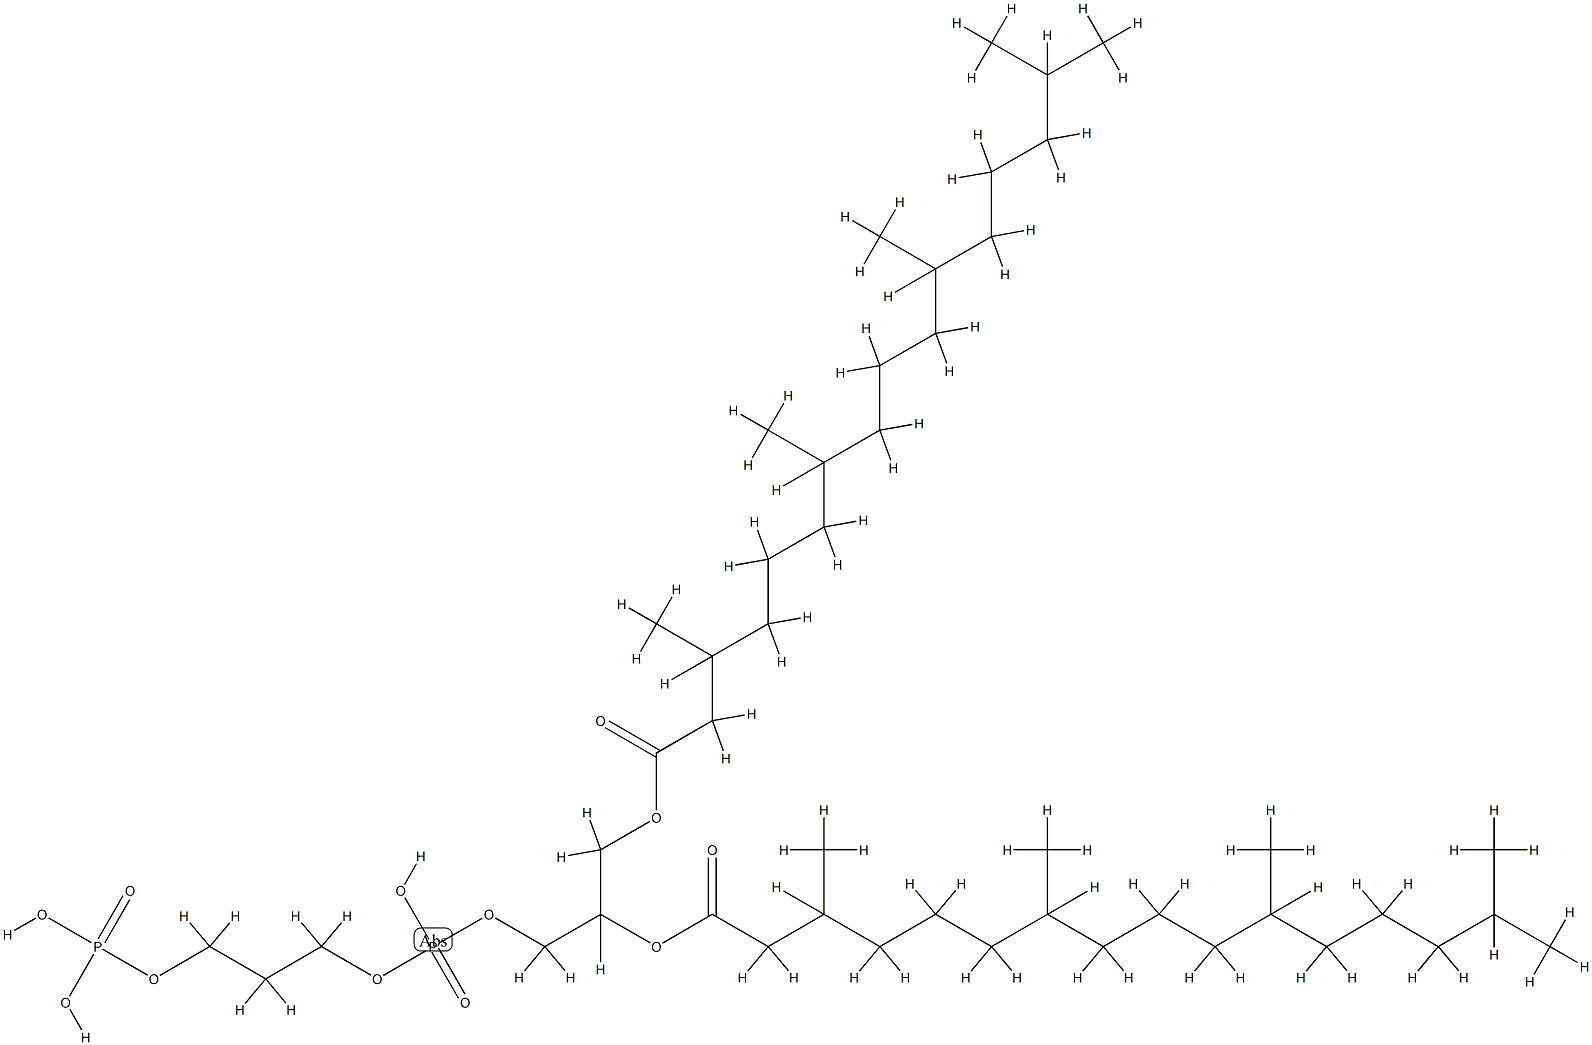 deoxyphosphatidylglycerol phosphate